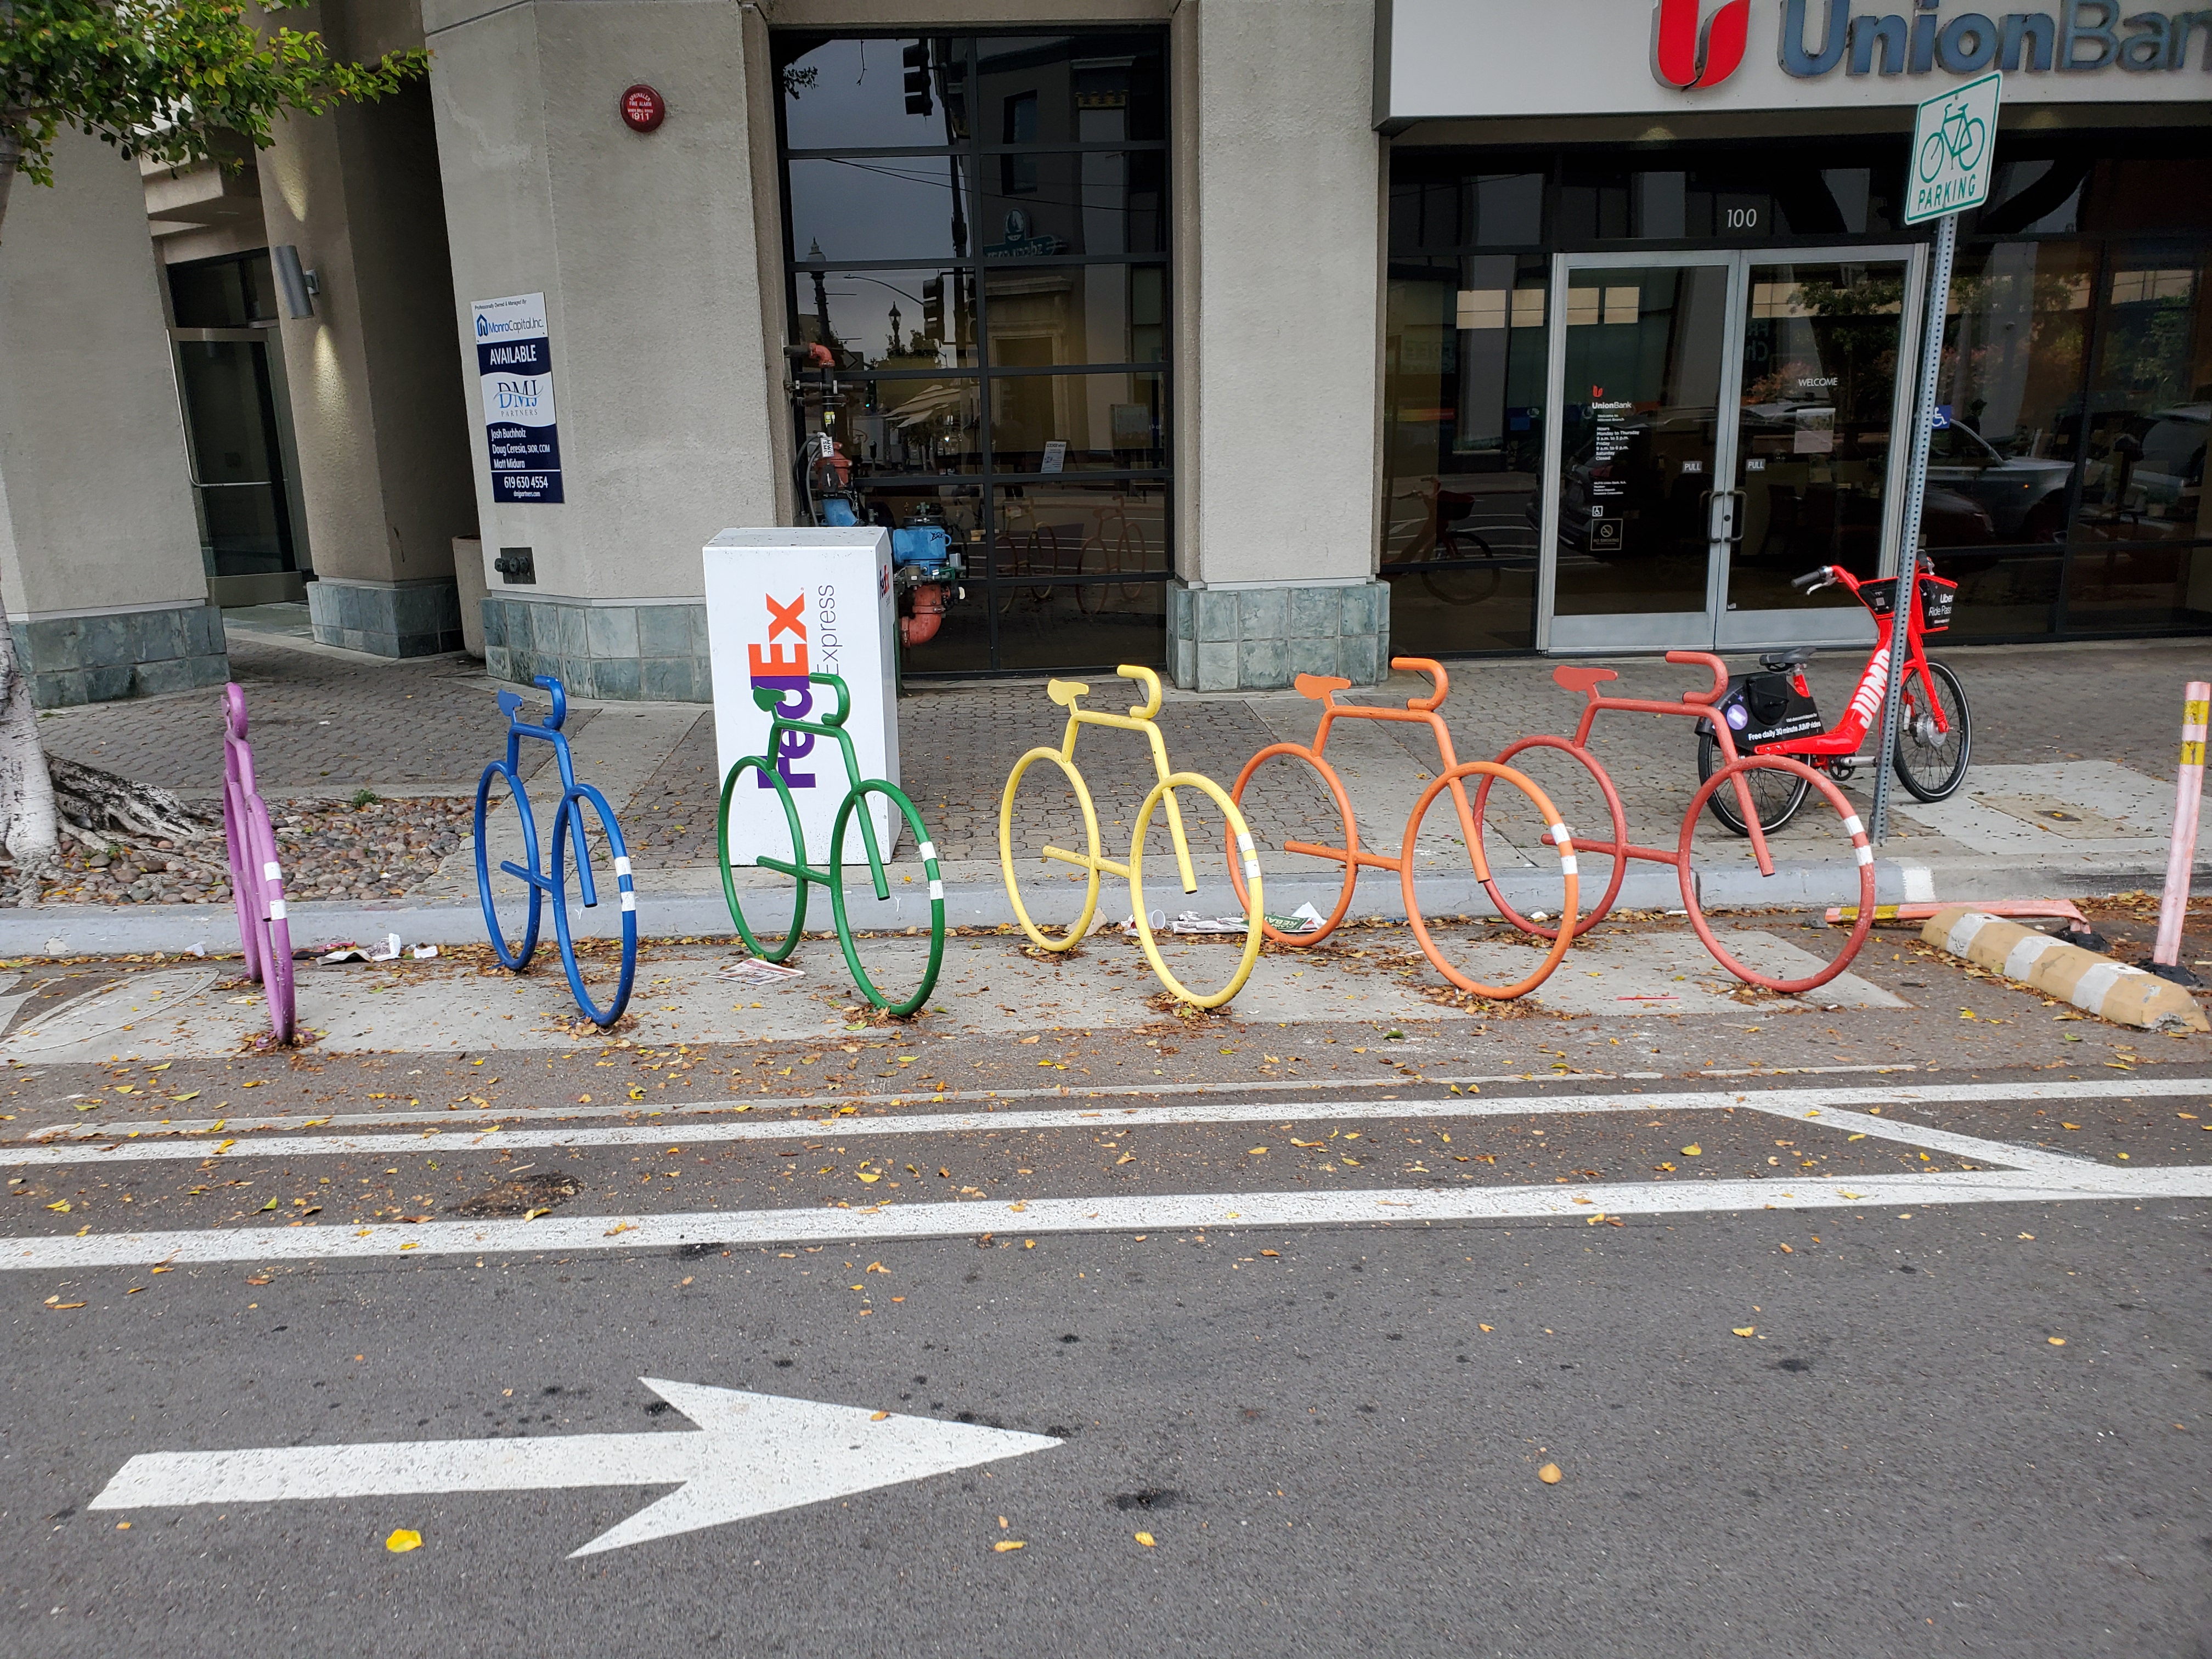 iCommute bike locker in downtown San Diego.